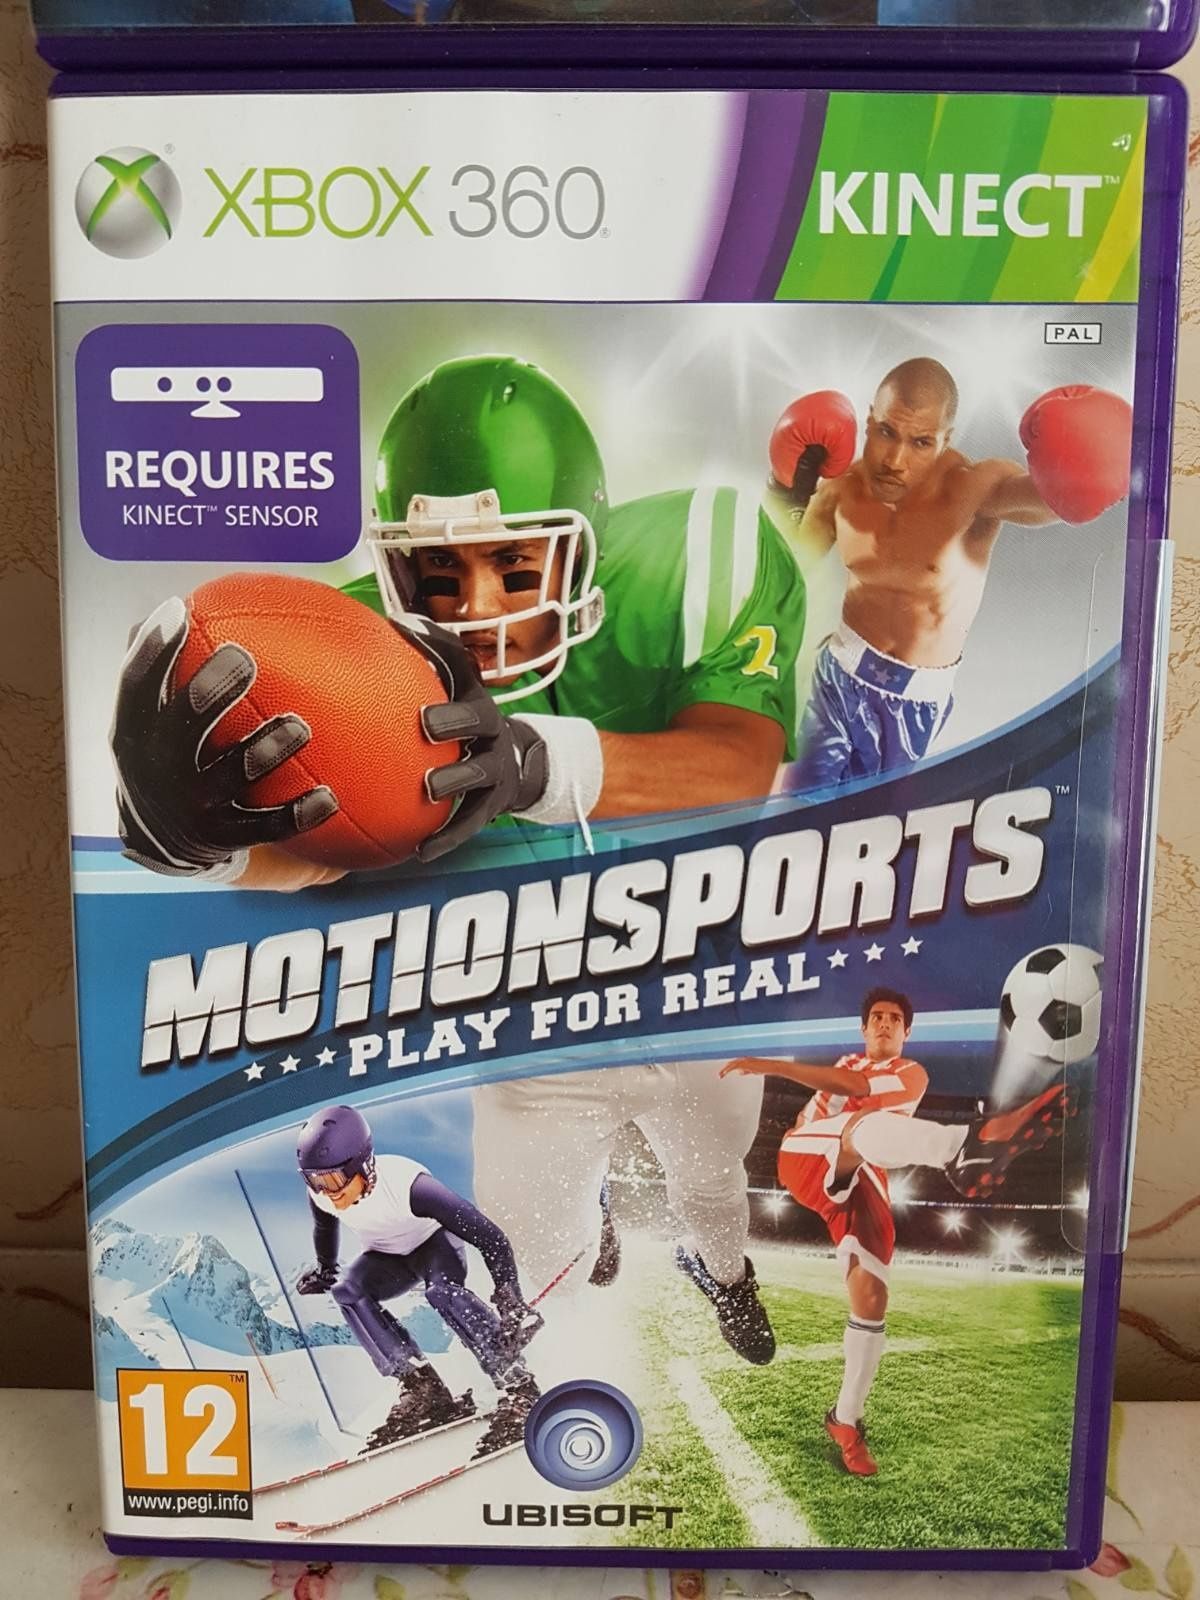 Xbox 360 игры на kinect